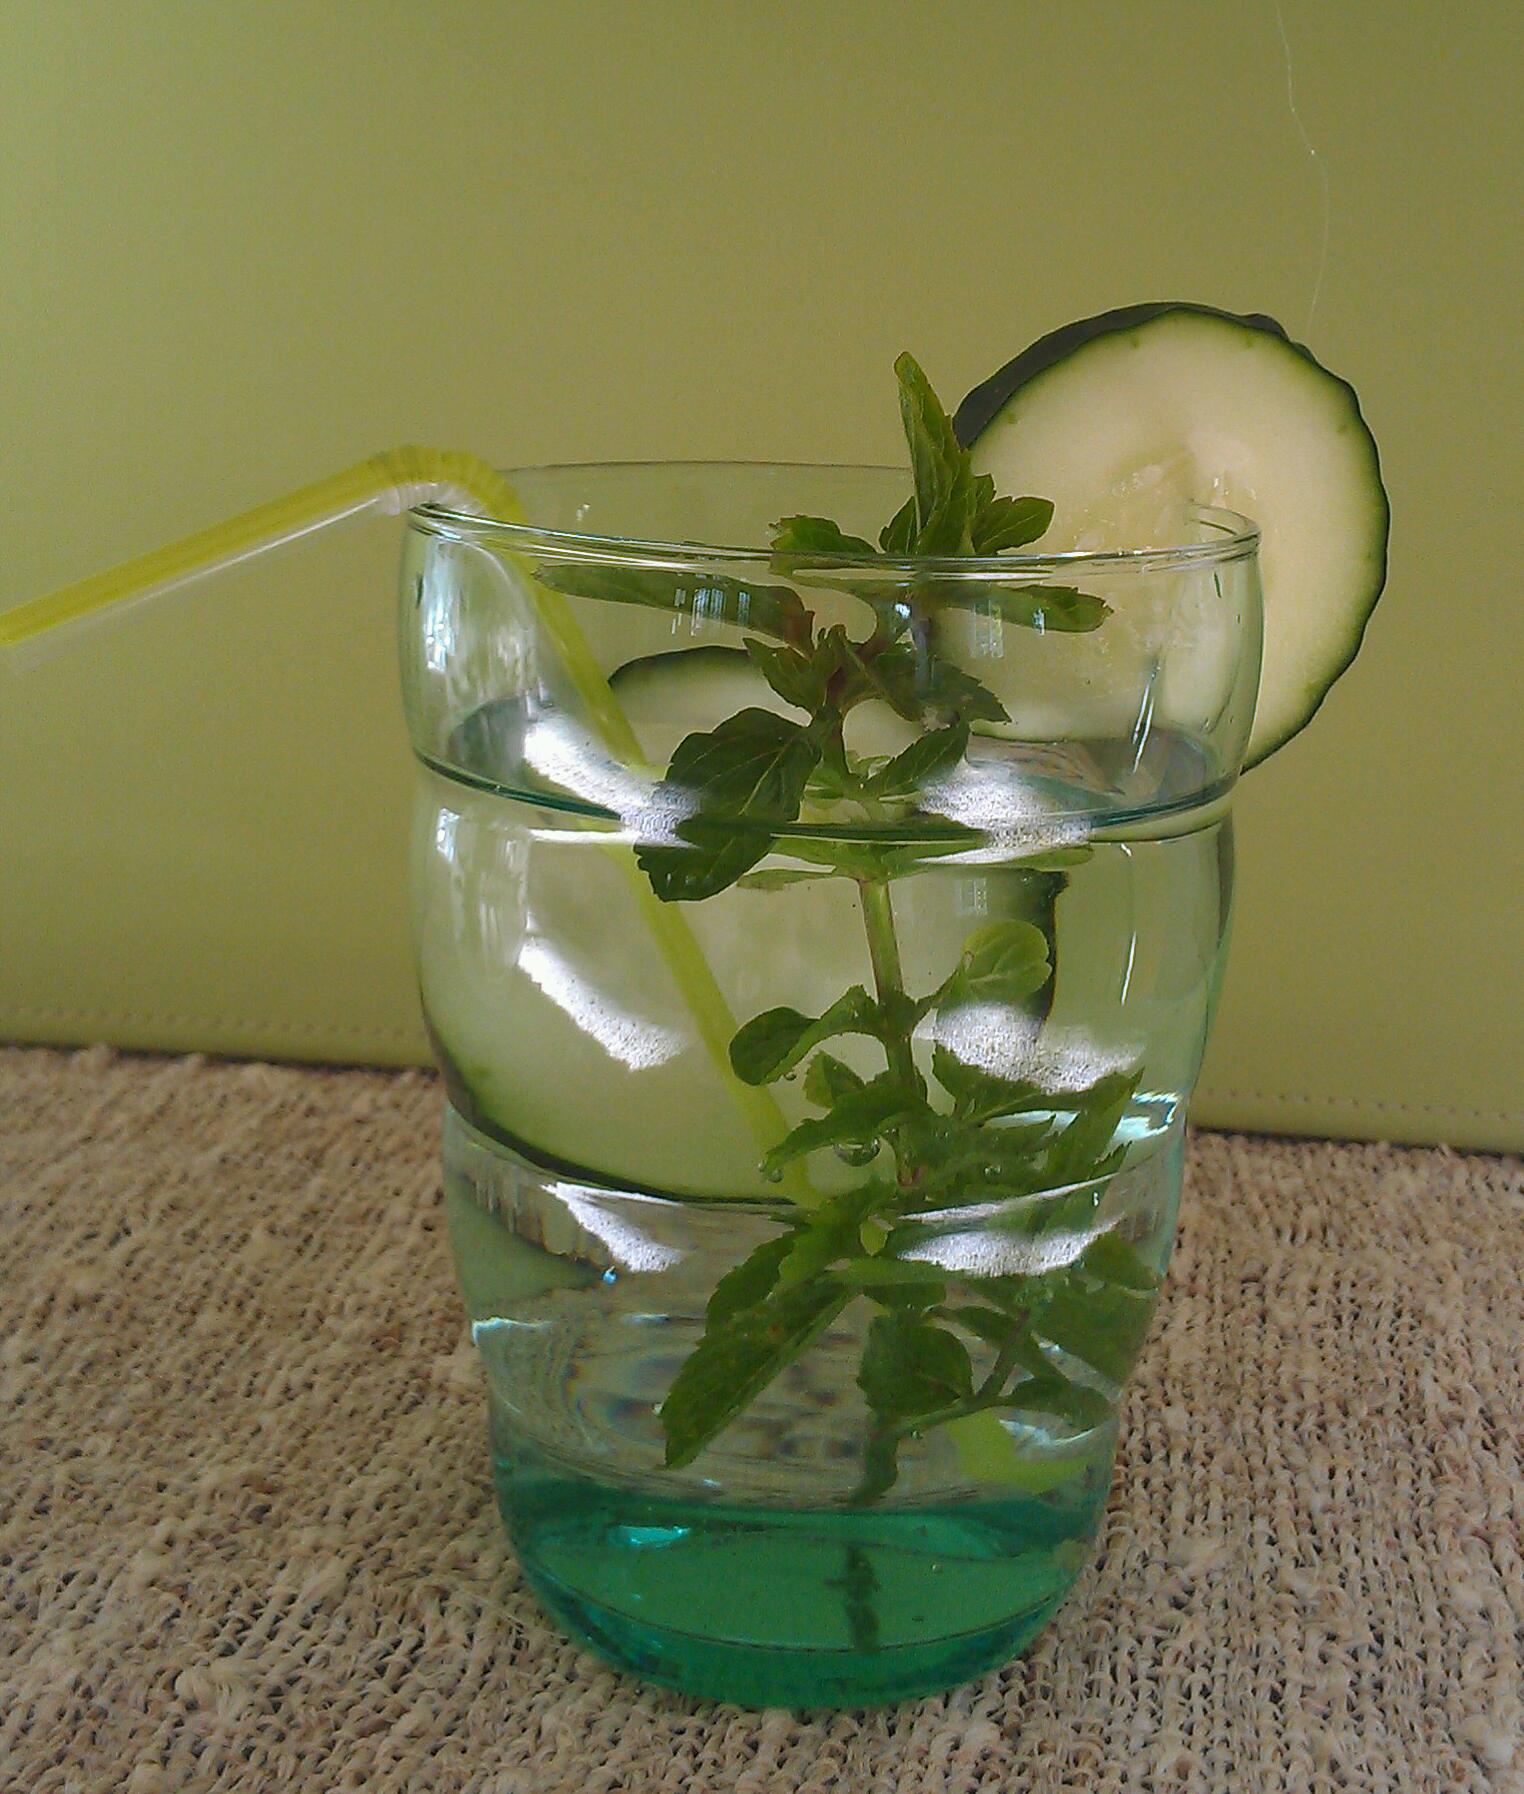 Cucumber-Water